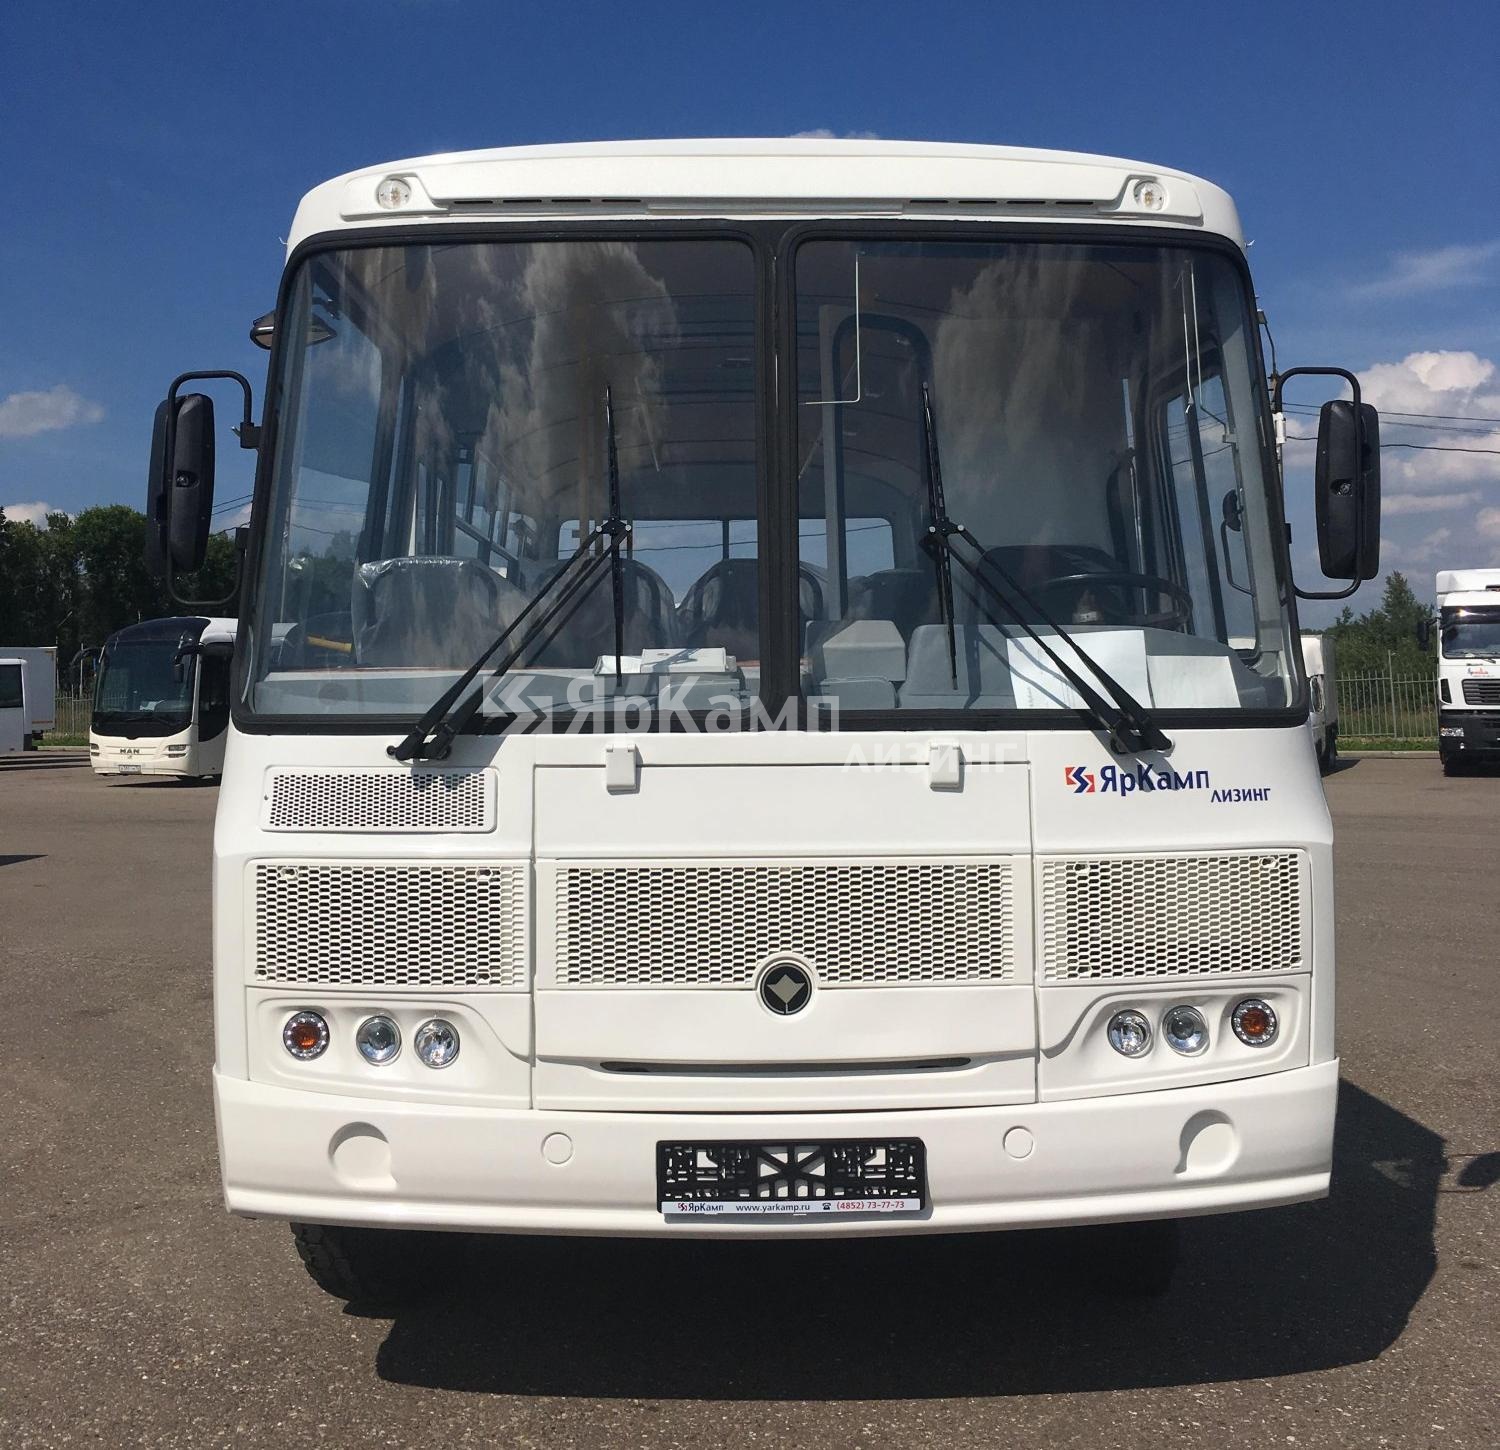 Автобус ПАЗ 32053 передан в лизинг 